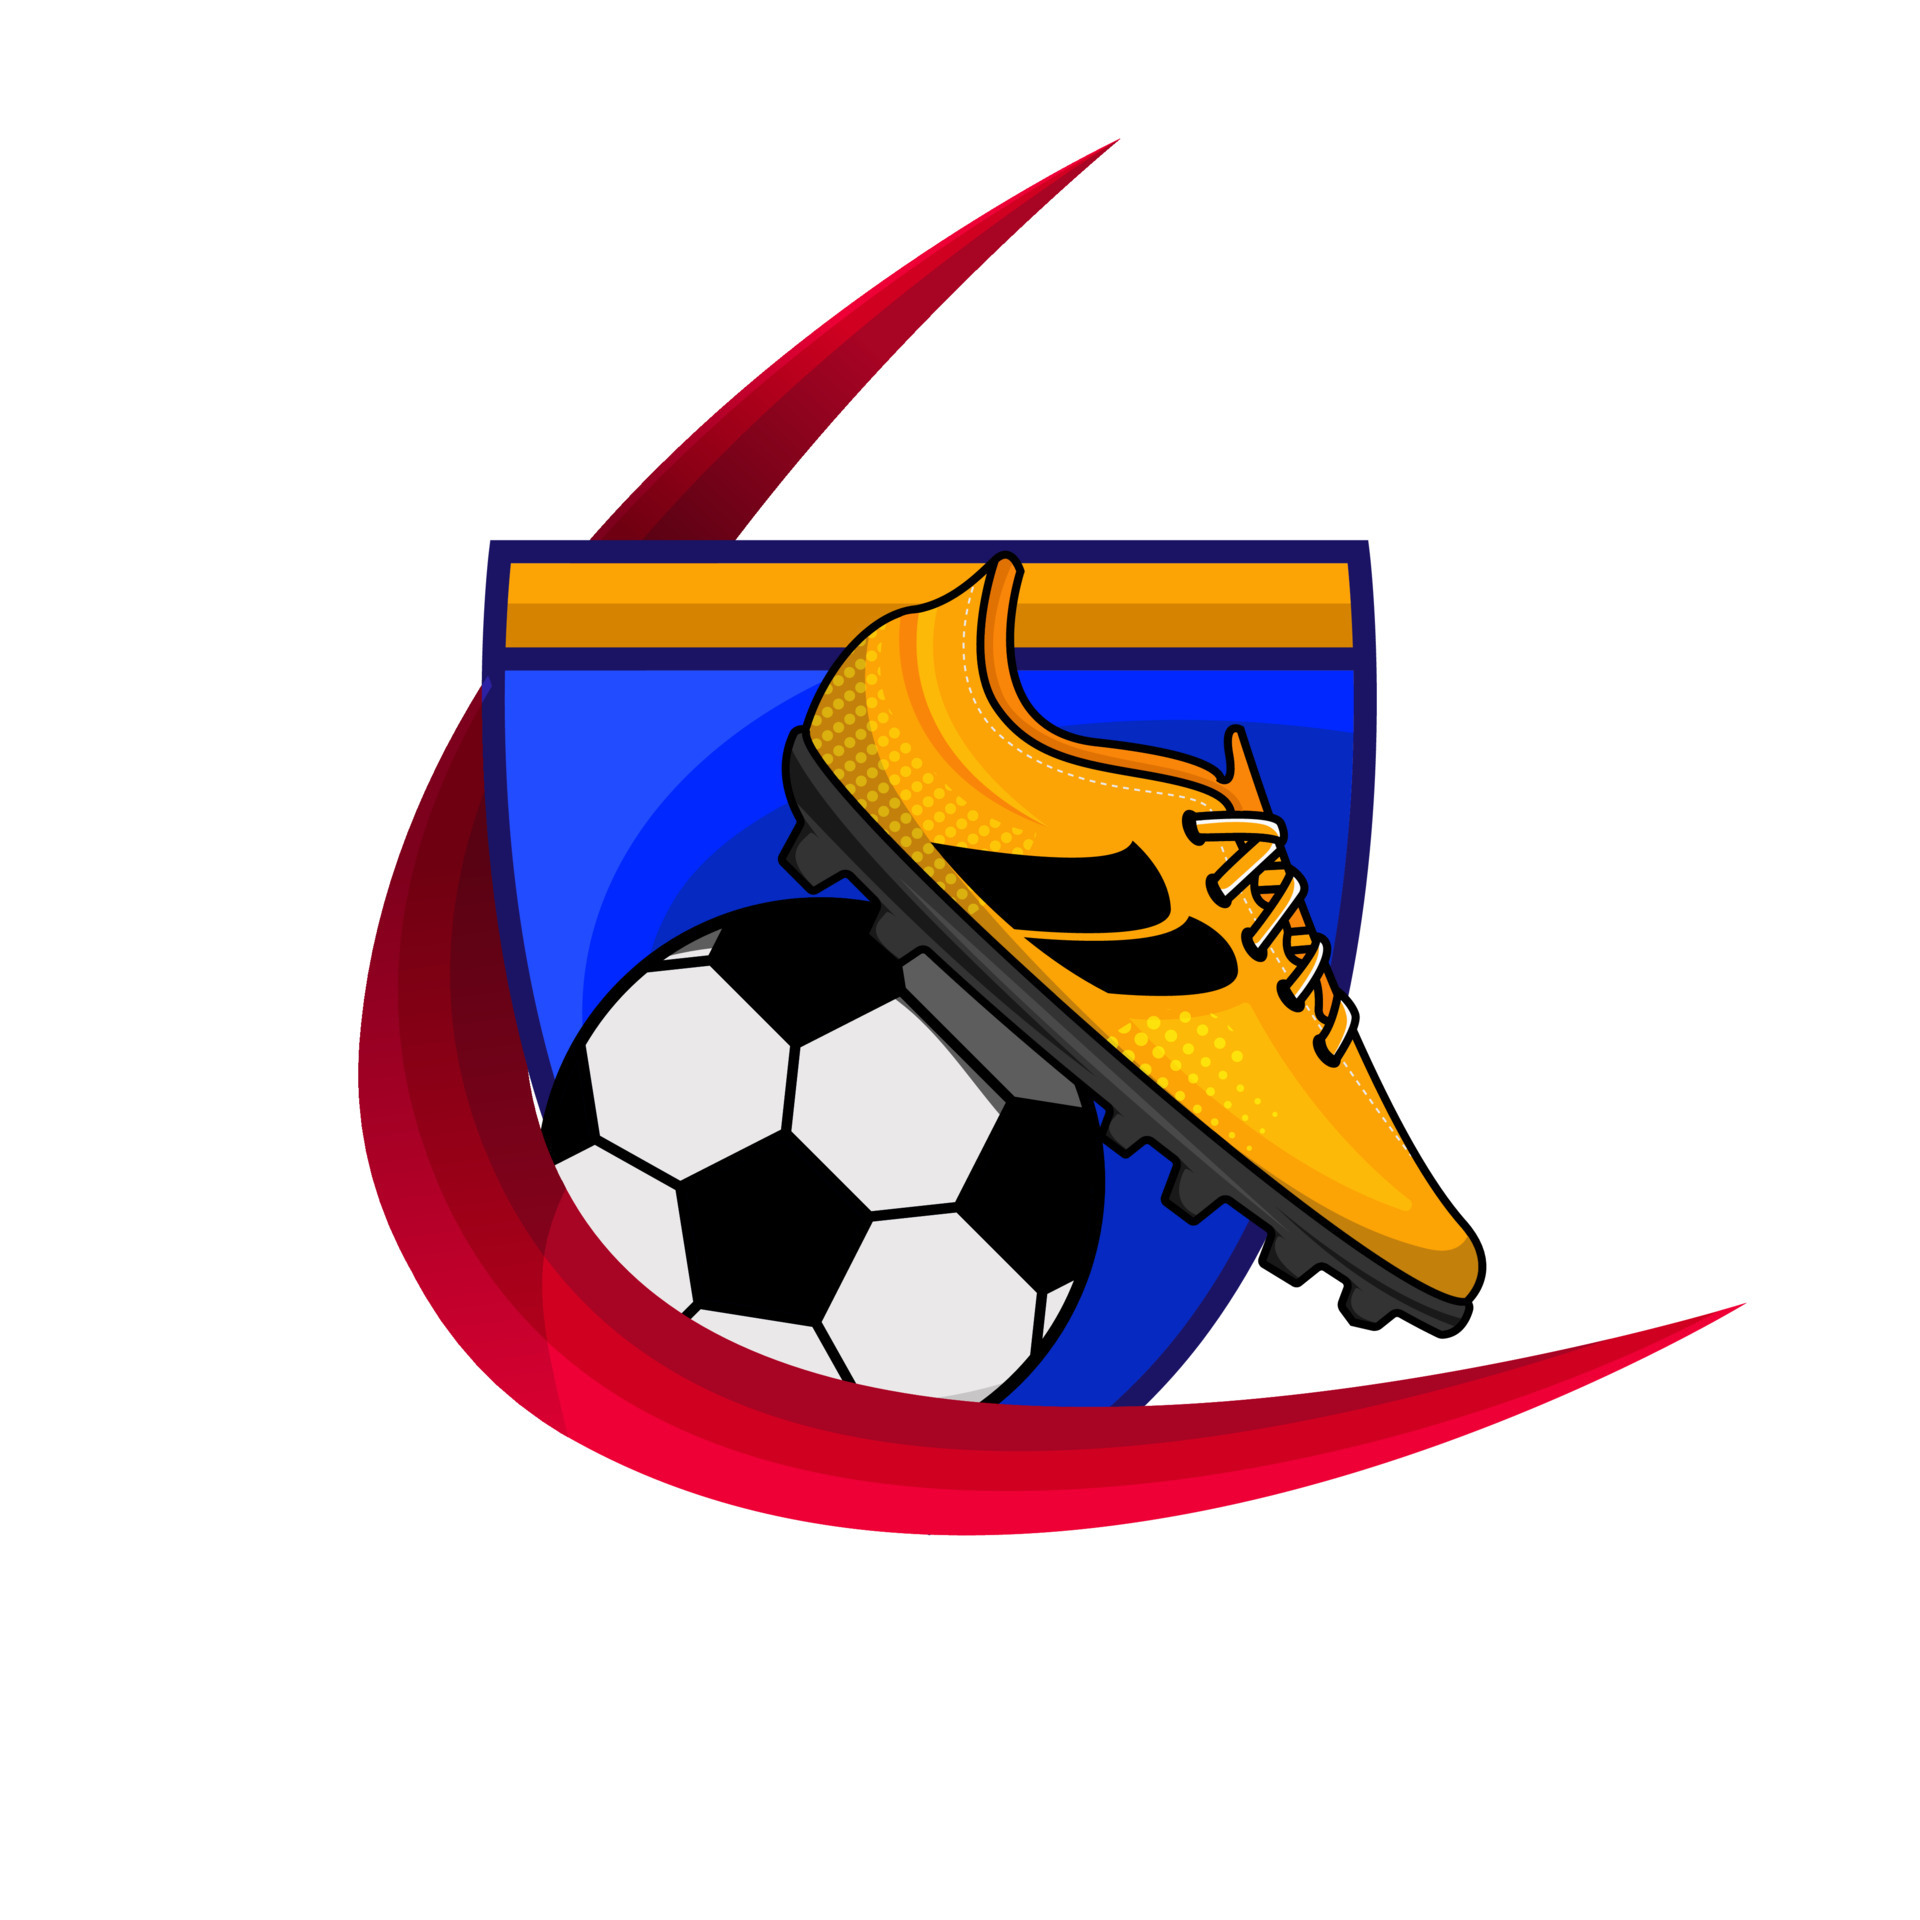 Đam mê bóng đá? Bạn sẽ yêu thích các thiết kế đầy sáng tạo của soccer logo. Hãy nhấp vào hình liên quan để tìm hiểu thêm về các biểu tượng độc đáo này và có cơ hội xem các logo được sử dụng trong các giải đấu bóng đá nổi tiếng nhất. 